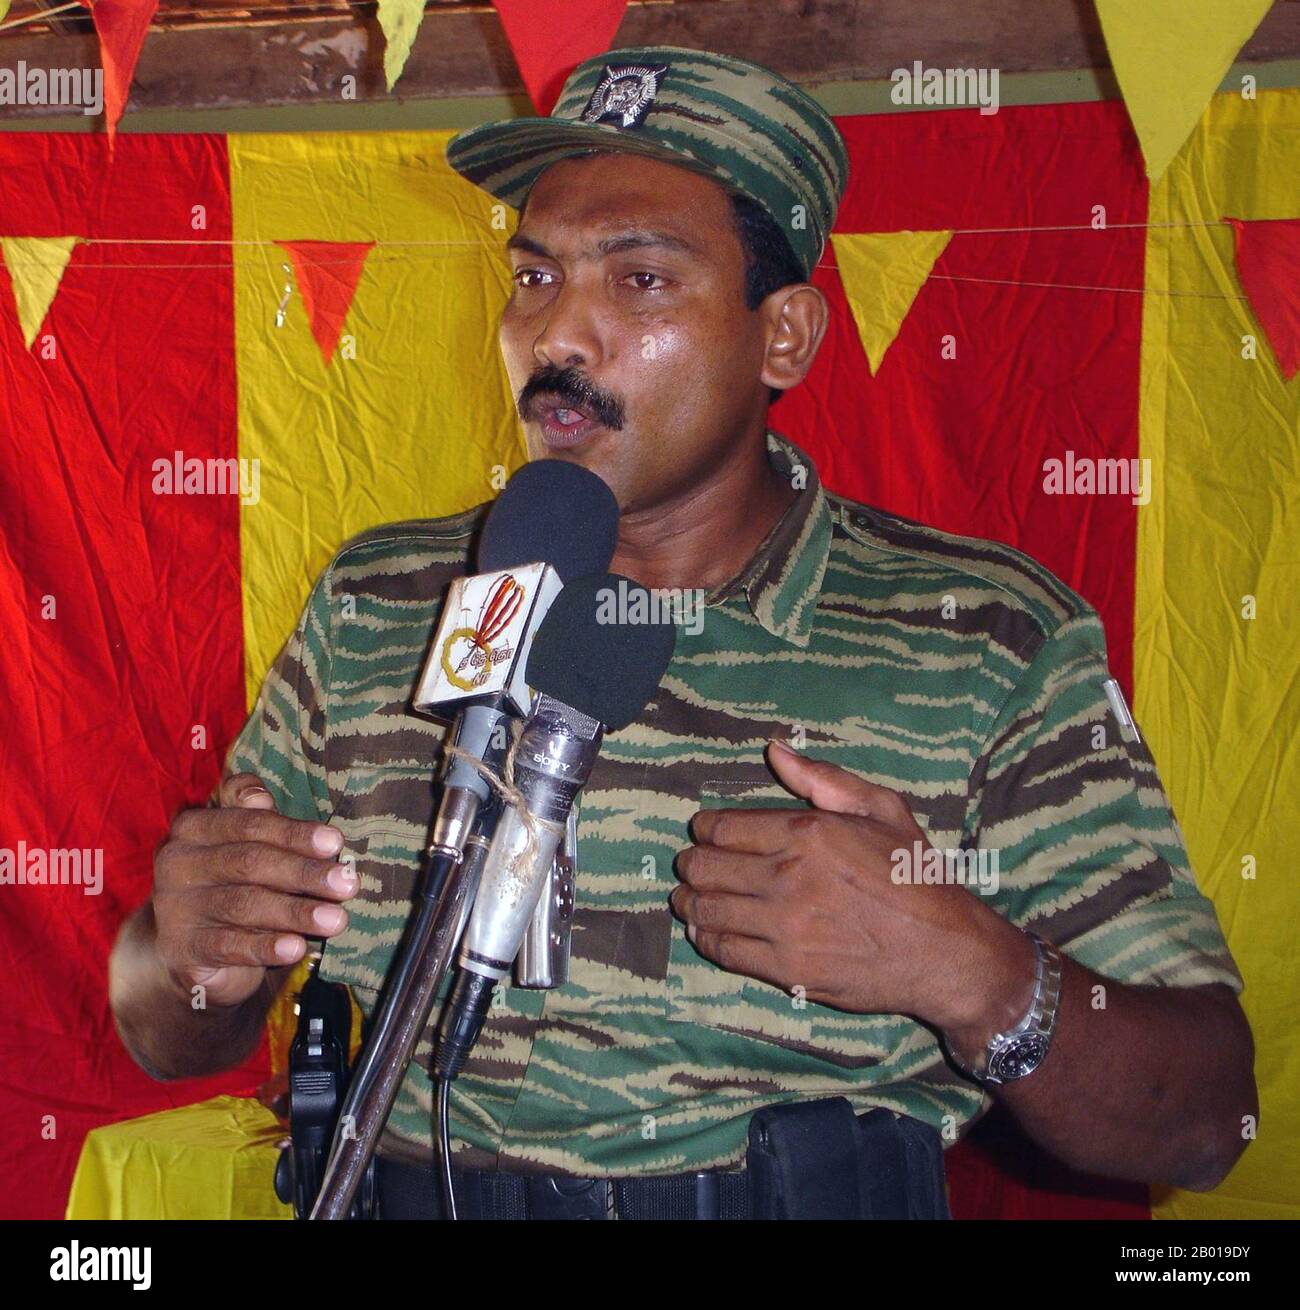 Sri Lanka: Cadre principal des LTTE K. V. Balakumaran s'adressant à une réunion sur le tigre tamoul, c. 2008. V. Balakumaran était l'un des deux hauts dirigeants de l'Organisation révolutionnaire des étudiants Eelam (EROS). En 1990, lui et une grande partie des membres de l'EROS quittèrent l'organisation et rejoignirent les Tigres de libération de l'Eelam tamoul (LTTE). Il était actif dans la division politique de LTTE. Le 29 janvier 2009, au cours de la dernière phase de la guerre civile au Sri Lanka, Balakumaran a été grièvement blessé par des soldats de l'armée sri lankaise. Il a été capturé pendant les dernières heures de la guerre civile. Banque D'Images